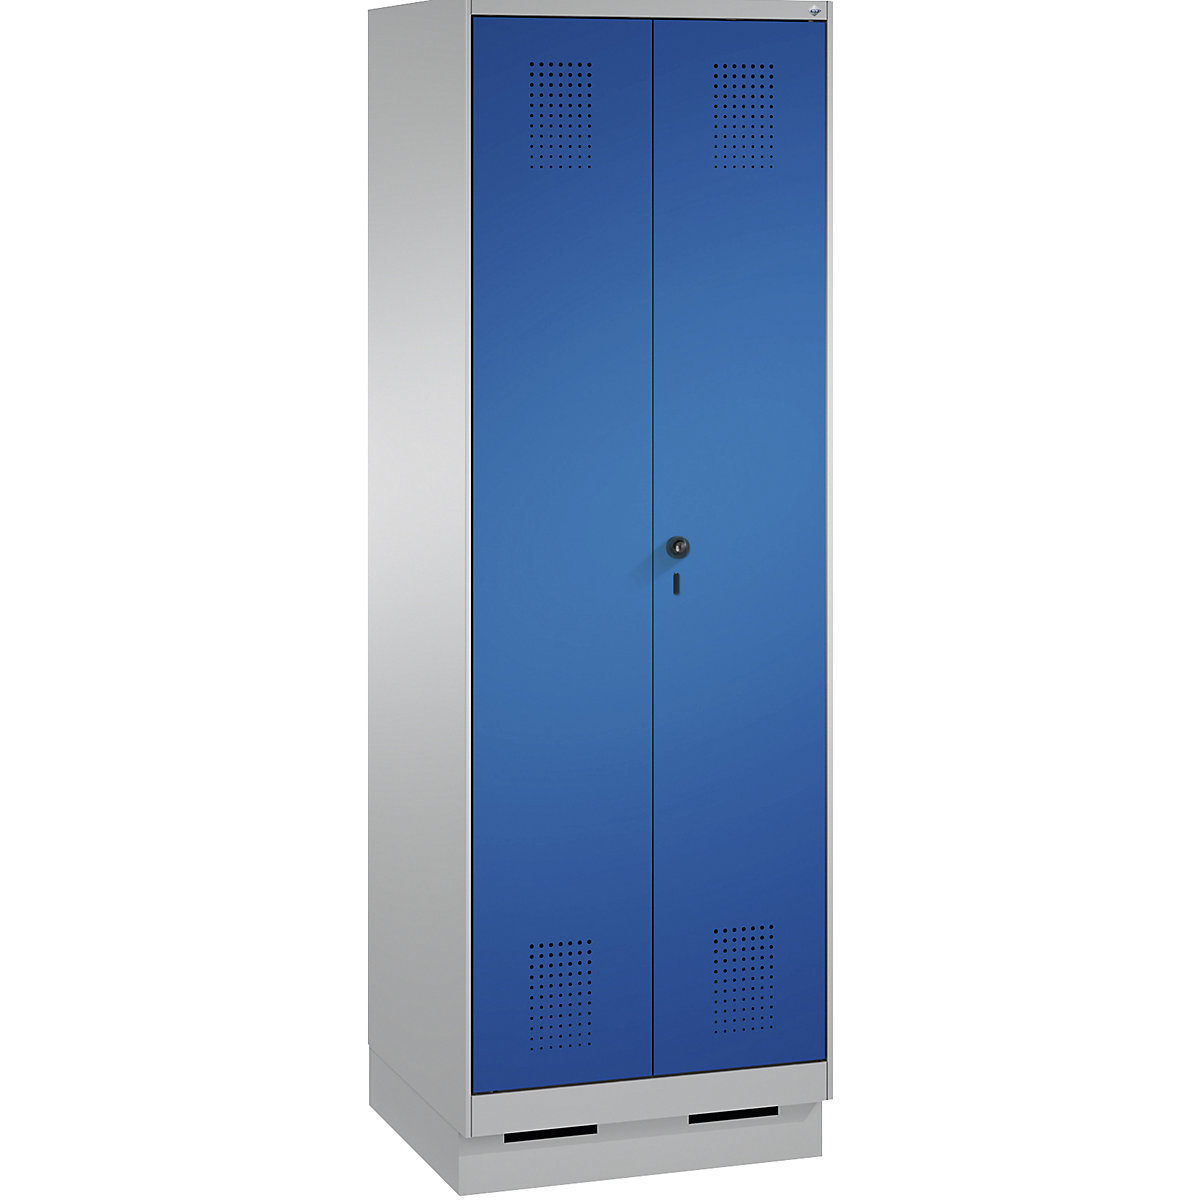 Szafa szatniowa EVOLO, drzwi zamykane do siebie – C+P, 2 przedziały, szer. przedziału 300 mm, z cokołem, biały aluminium / niebieska gencjanowa-15